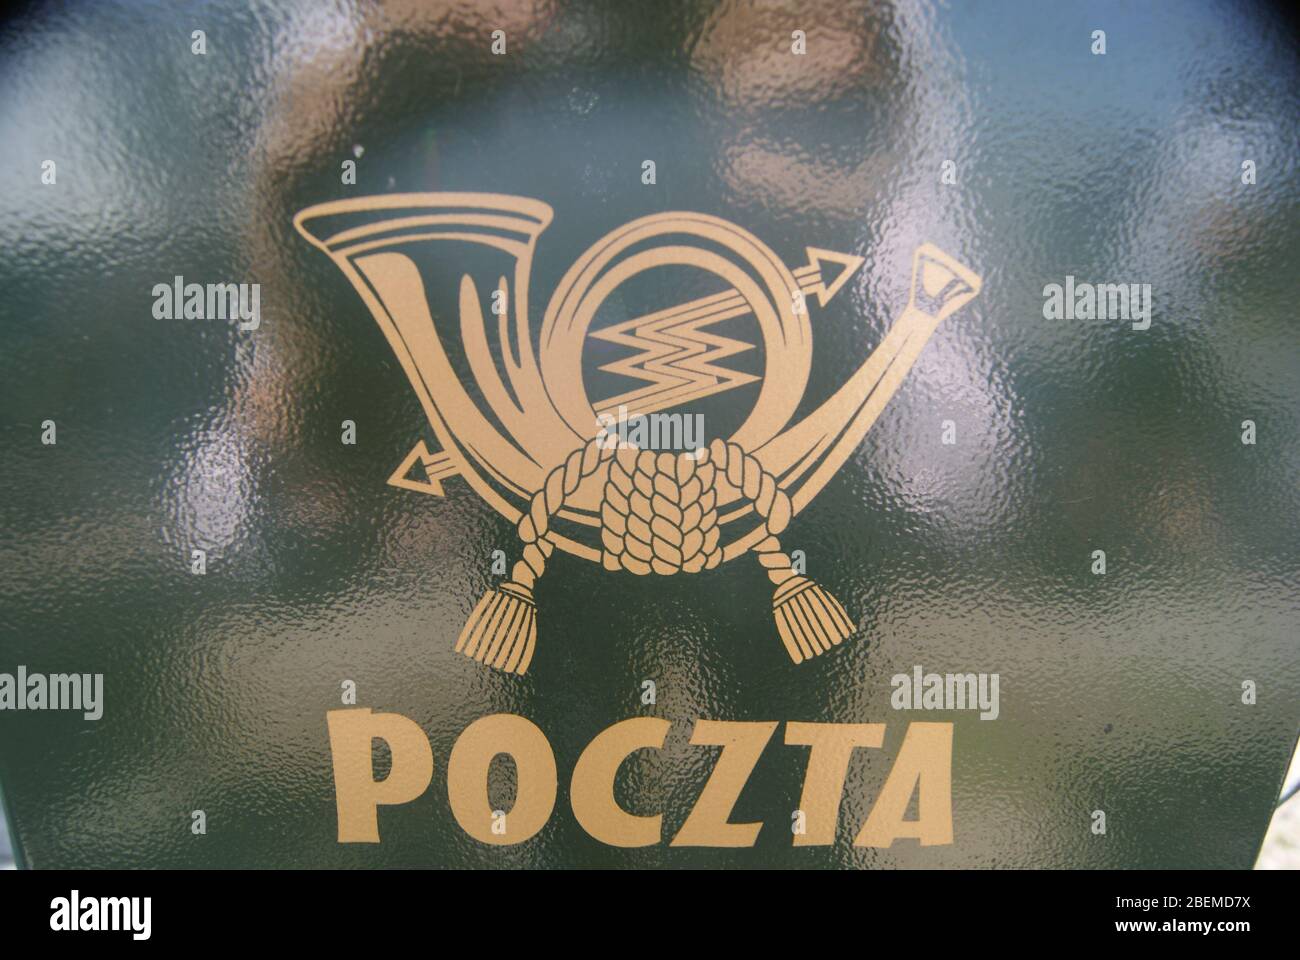 Boite aux lettres en Pologne avec les symboles de la poste polonaise Stockfoto